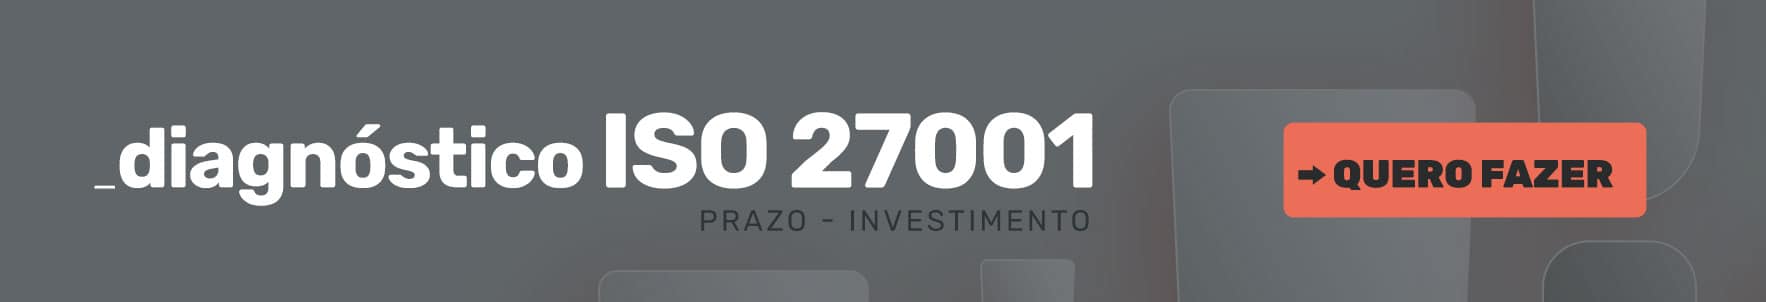 27001